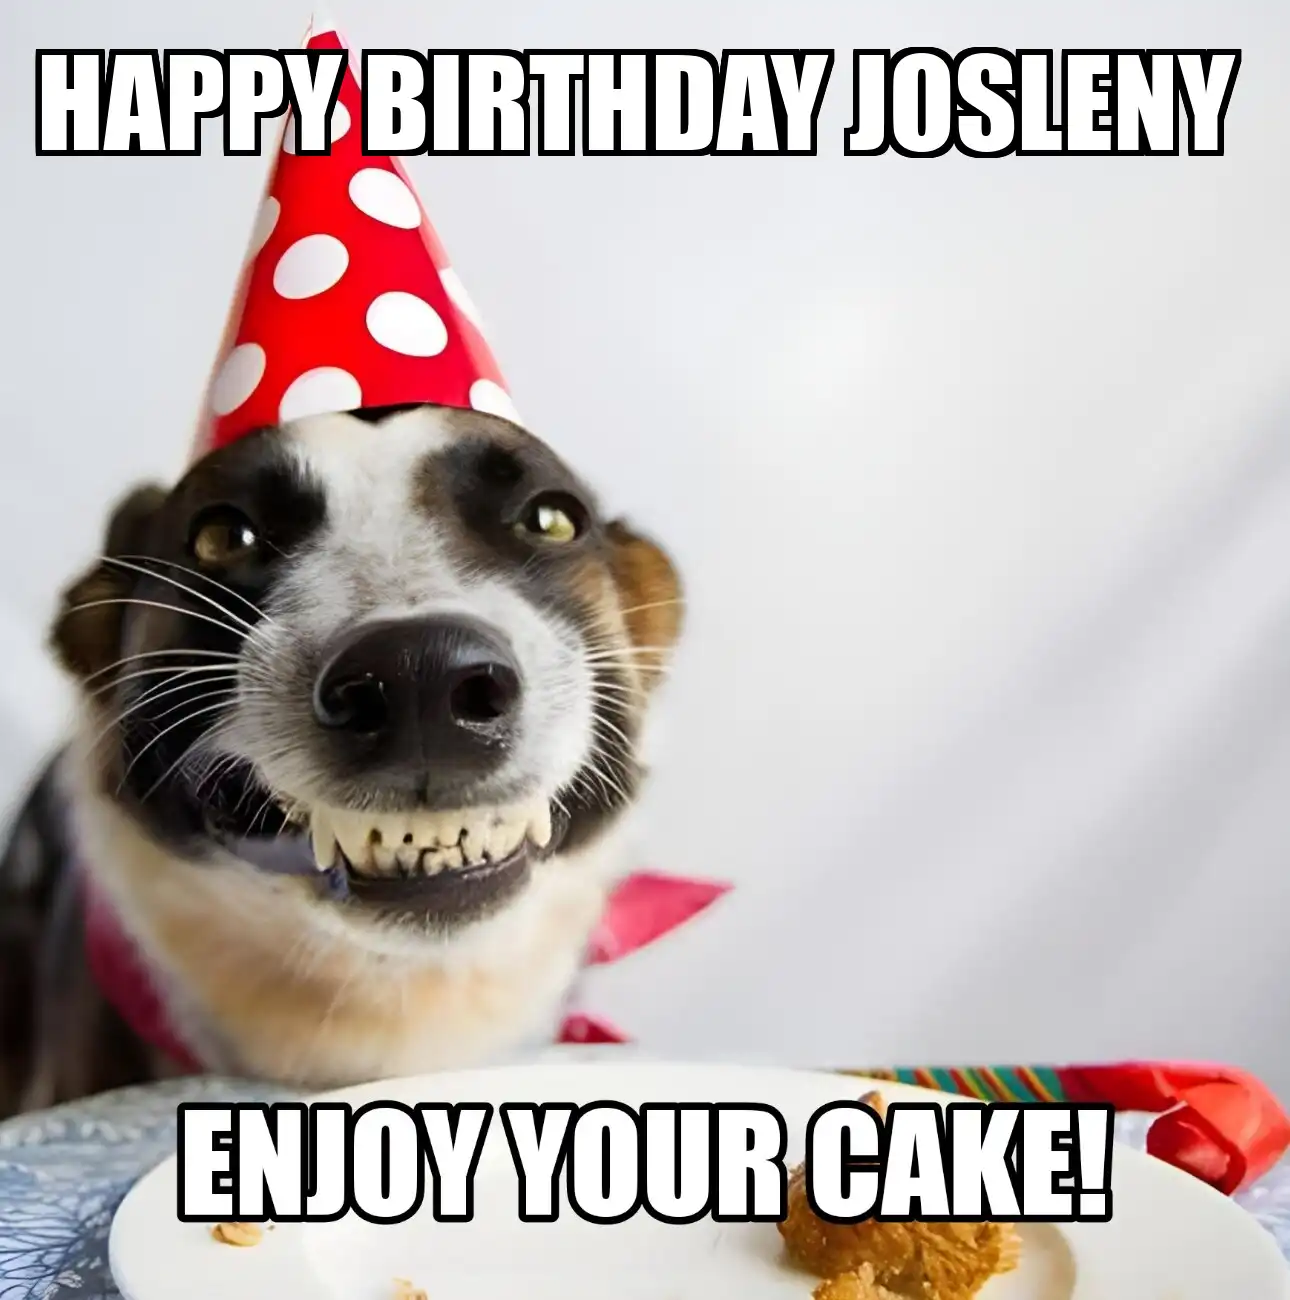 Happy Birthday Josleny Enjoy Your Cake Dog Meme